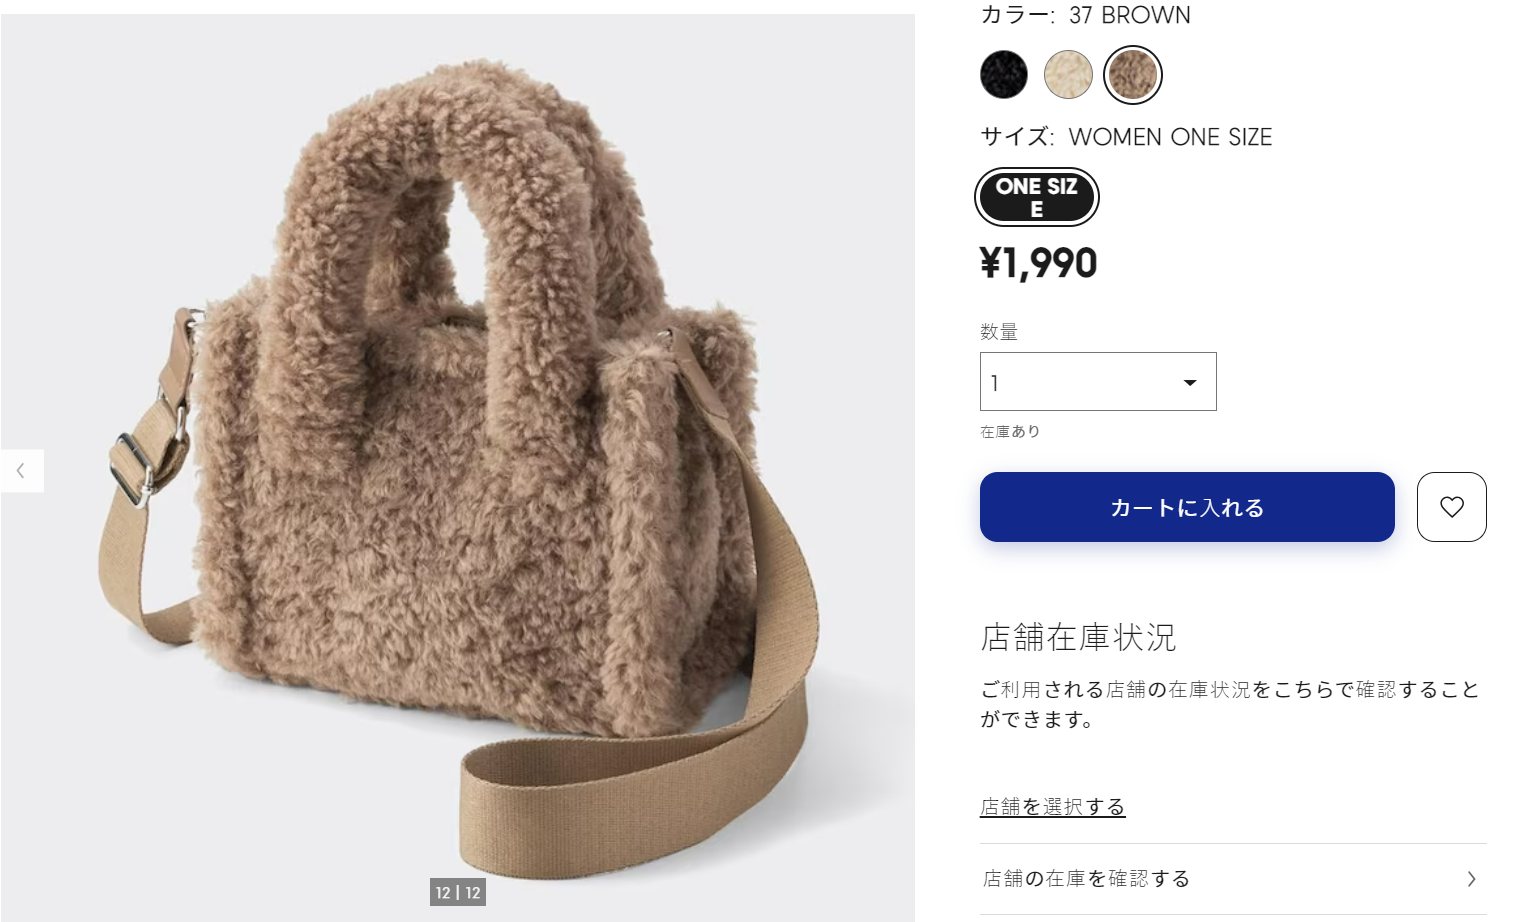 日本GU毛毛包售價1990日幣再入荷